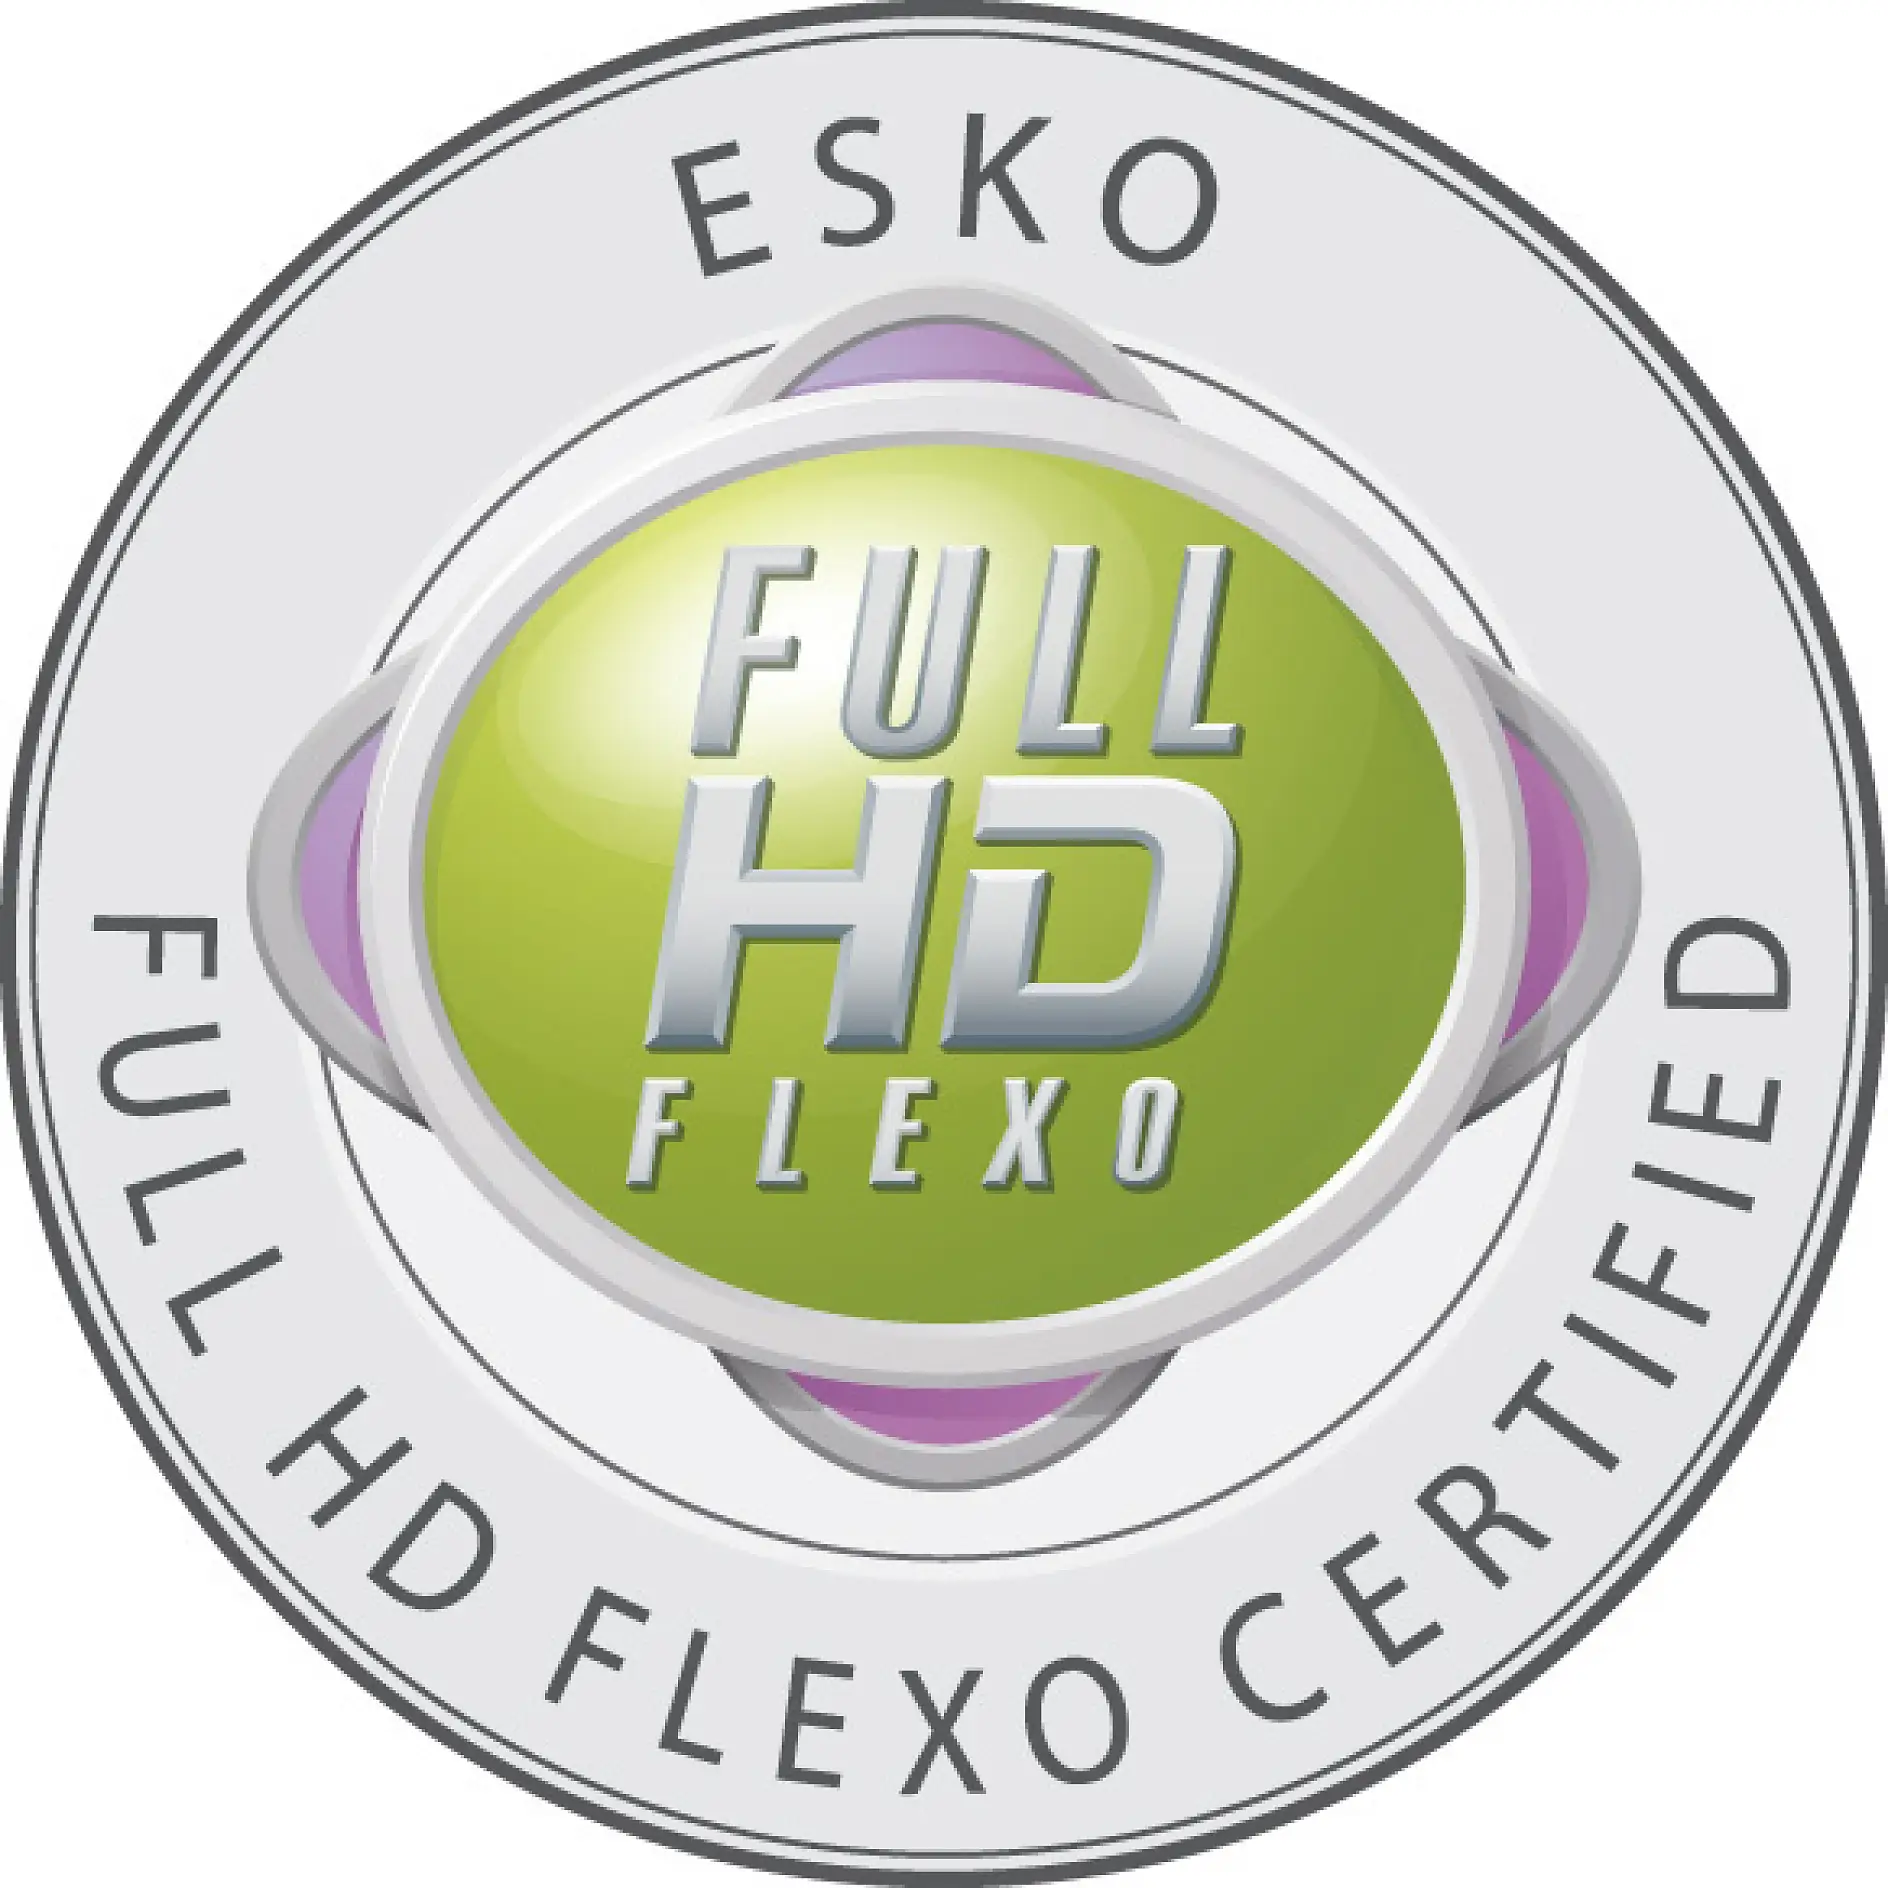 Full HD Flexo ženklą gali naudoti tik sertifikuotos įmonės